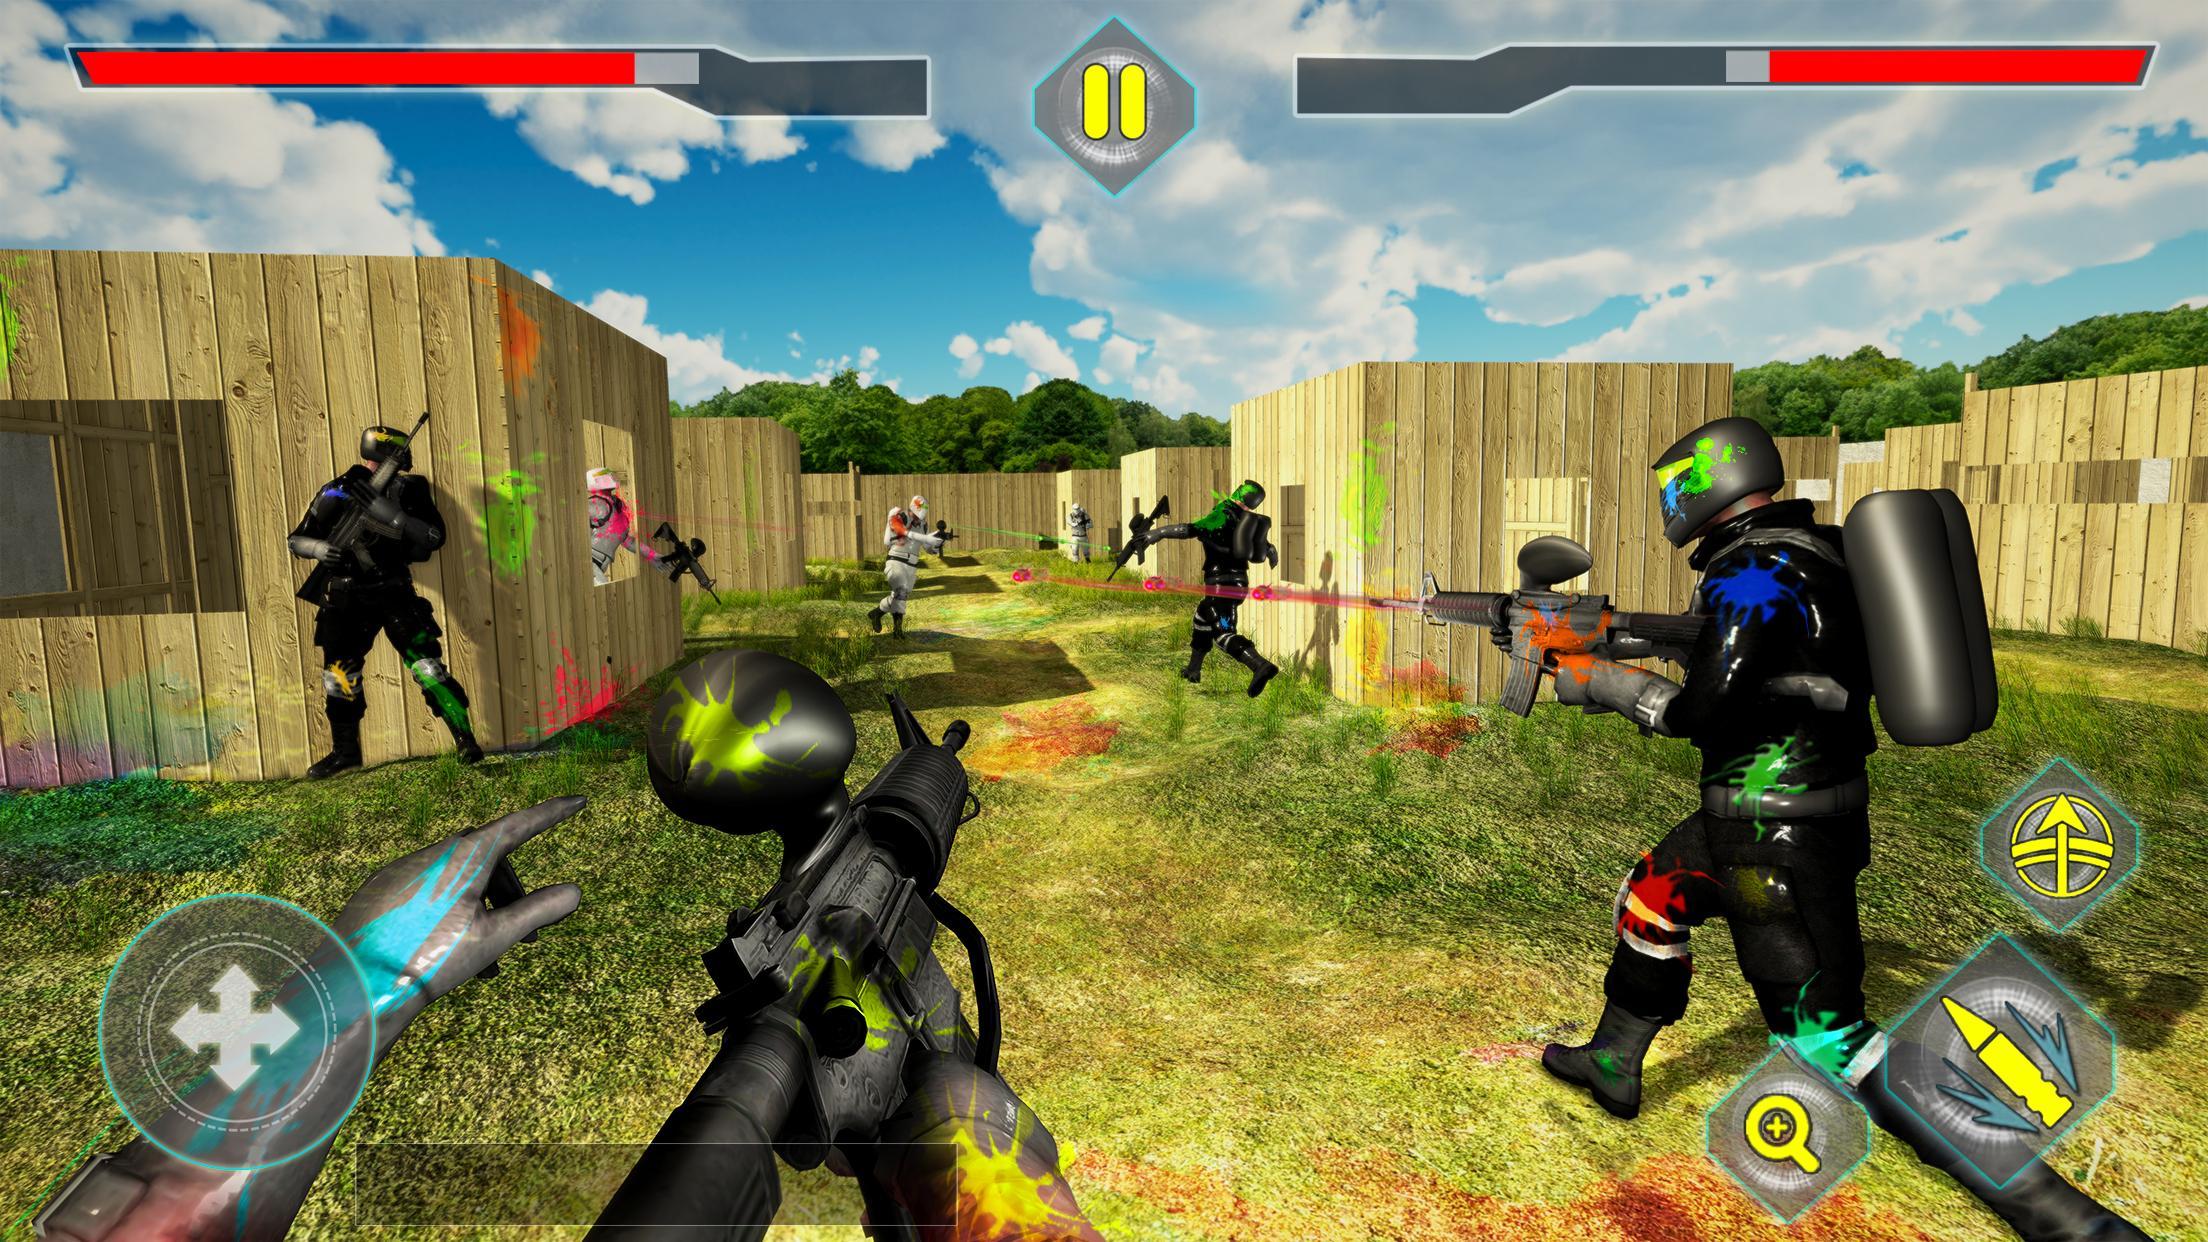 Screenshot 1 of Арена для стрельбы по пейнтболу: настоящая битва на поле боя 1.1.4